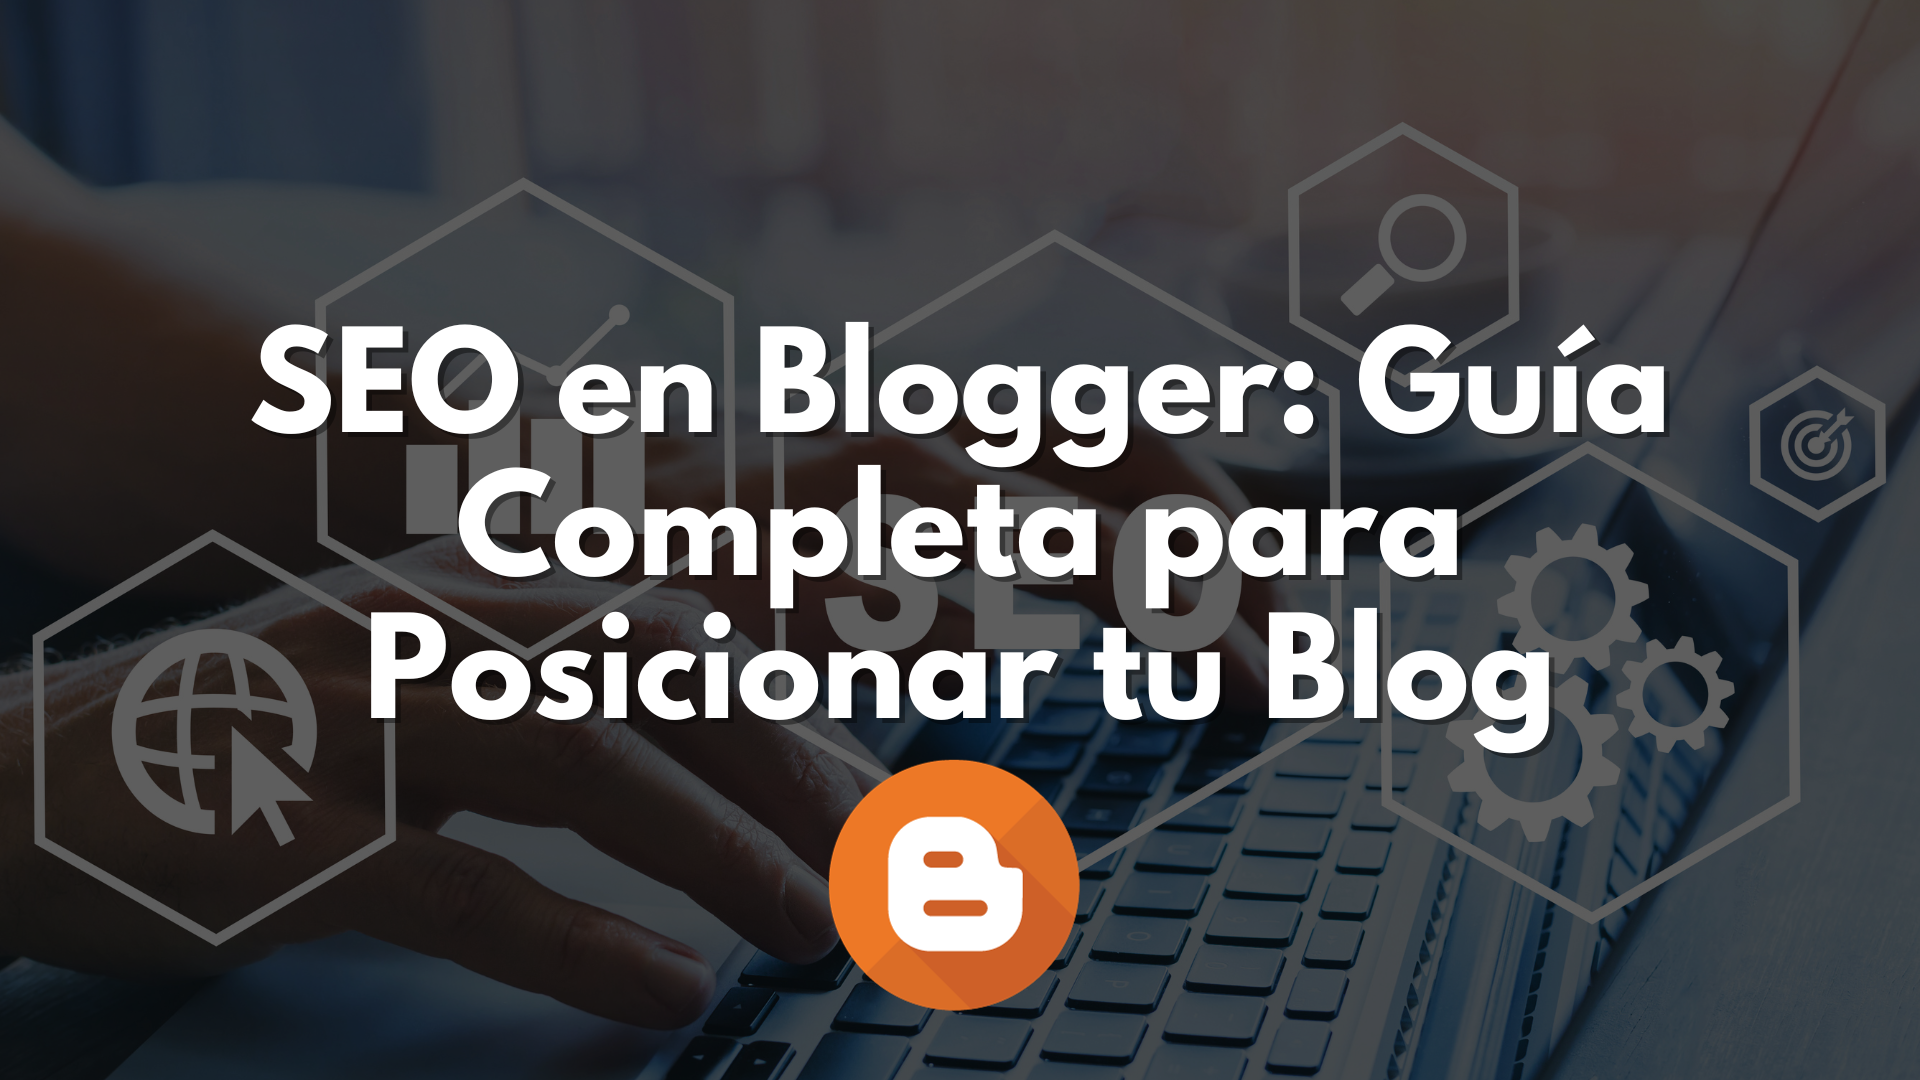 SEO en Blogger: Guía Completa para Posicionar tu Blog